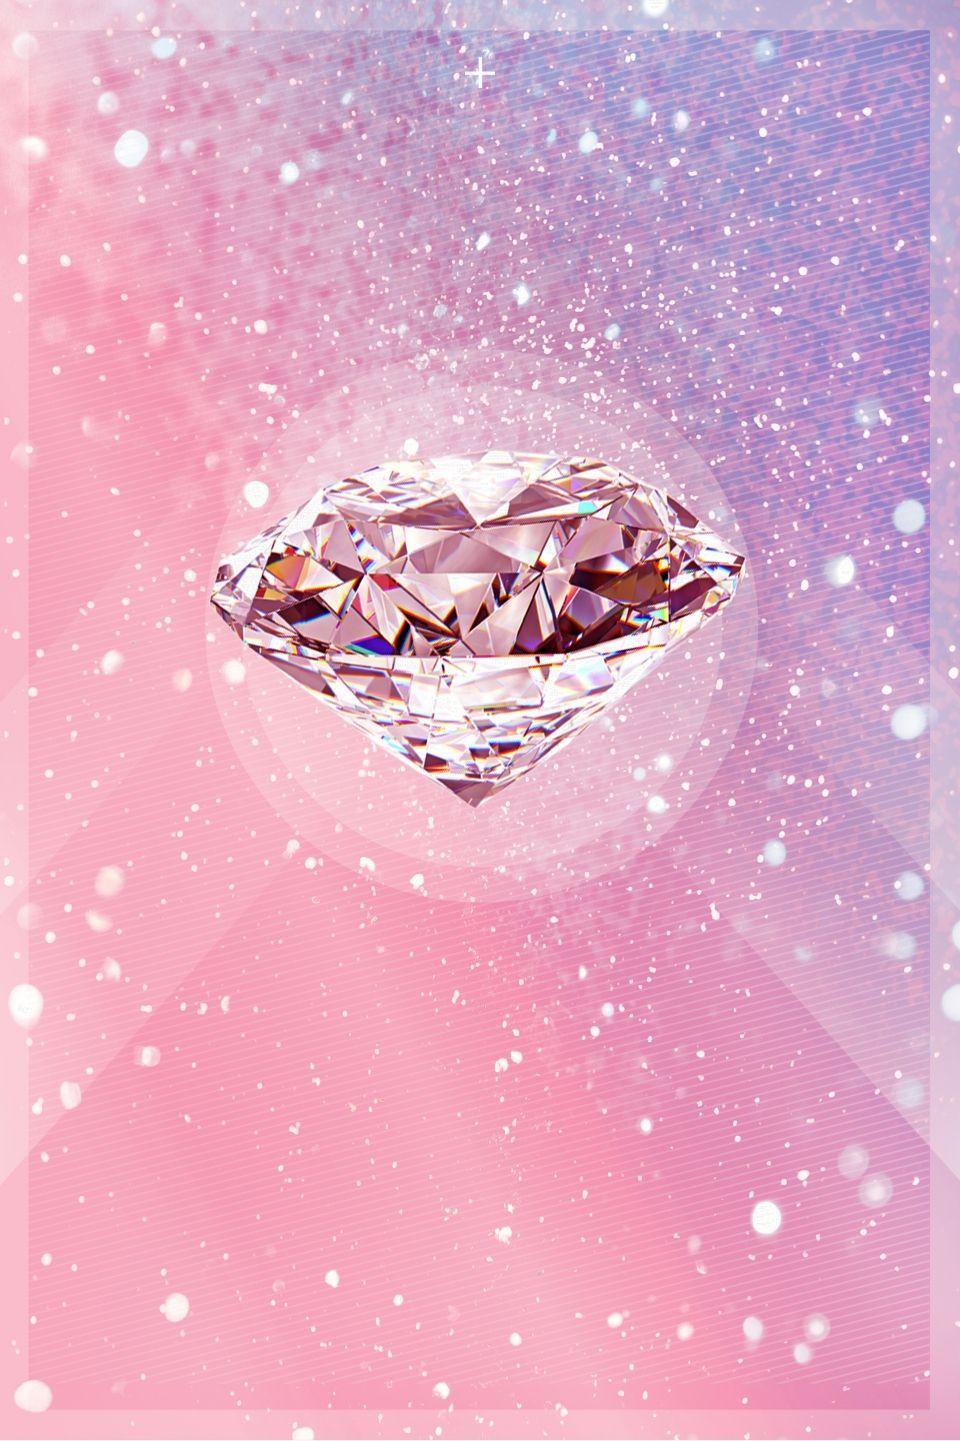 Bạn đang tìm kiếm hình nền lung linh và độc đáo cho điện thoại hoặc máy tính của mình? Hãy nhấn vào đây để khám phá bộ sưu tập Hình nền kim cương hồng, với những chiếc kim cương lấp lánh và mềm mại như nhung, đem đến vẻ đẹp rực rỡ cho màn hình của bạn.